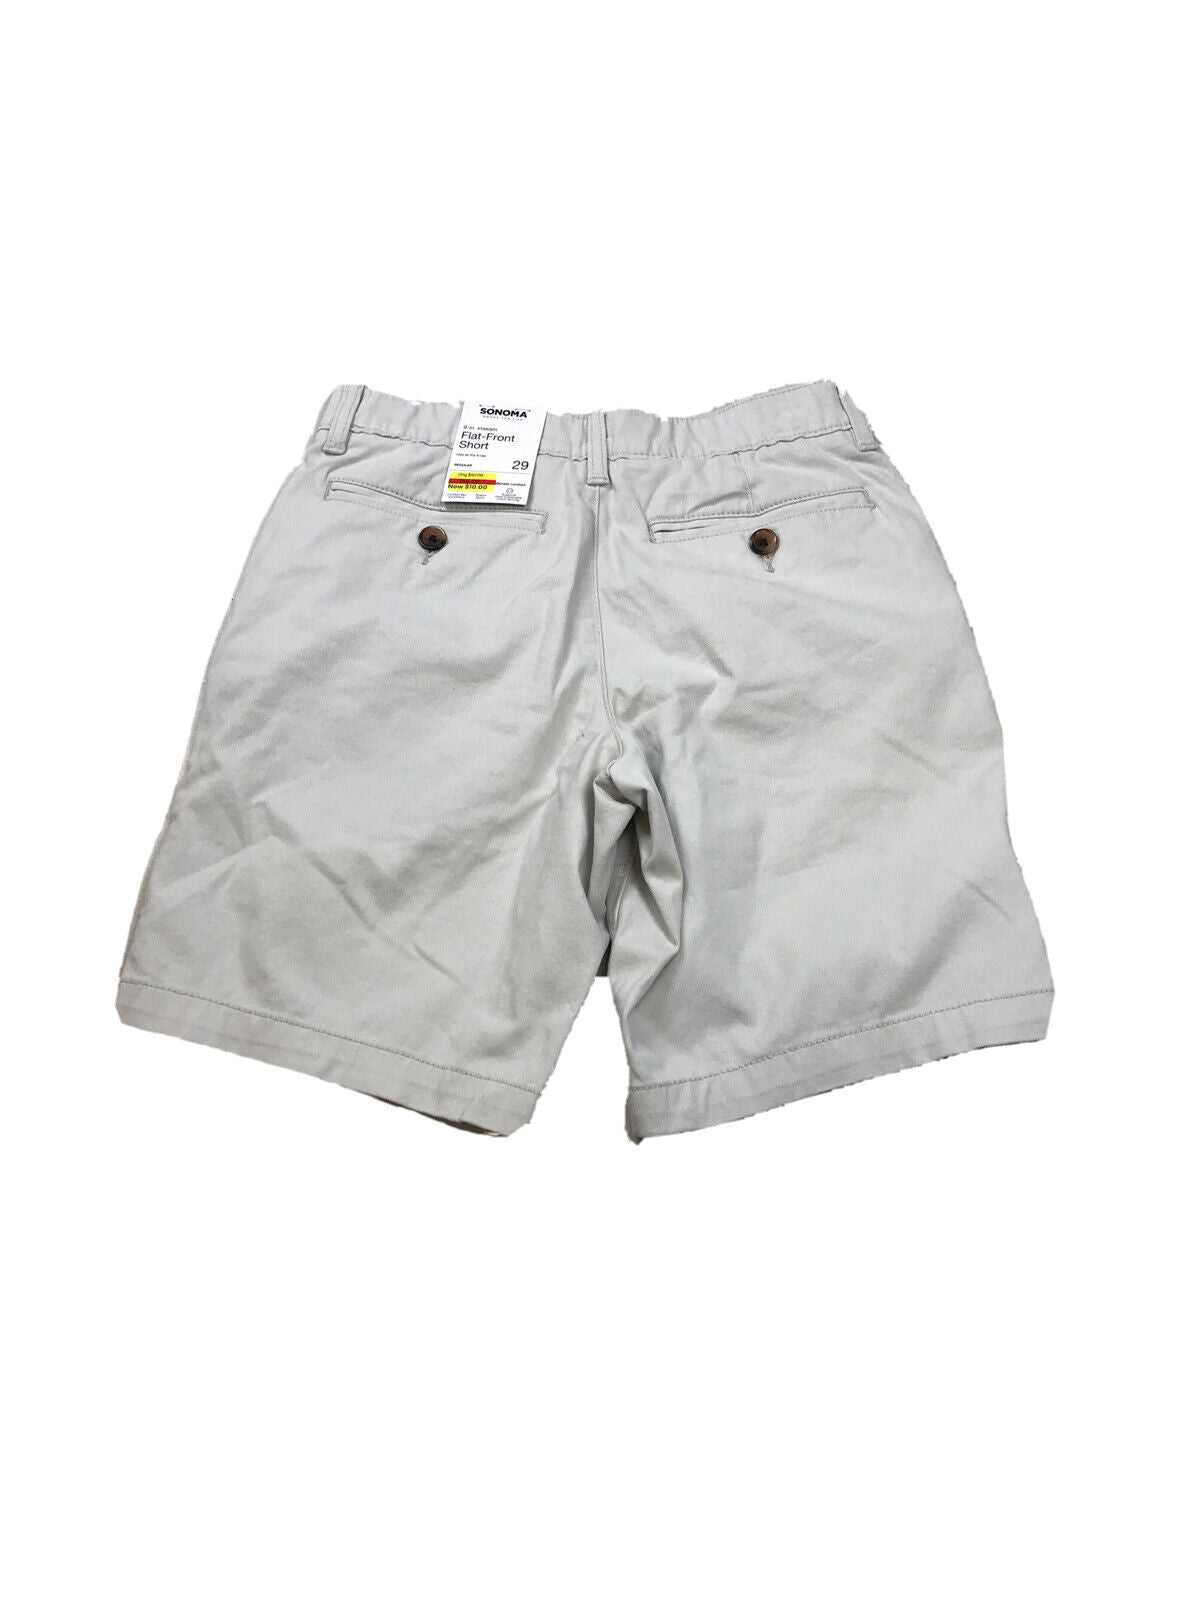 NUEVOS pantalones cortos chinos tipo chino con cintura elástica y parte delantera plana en color beige de Sonoma para hombre - 29